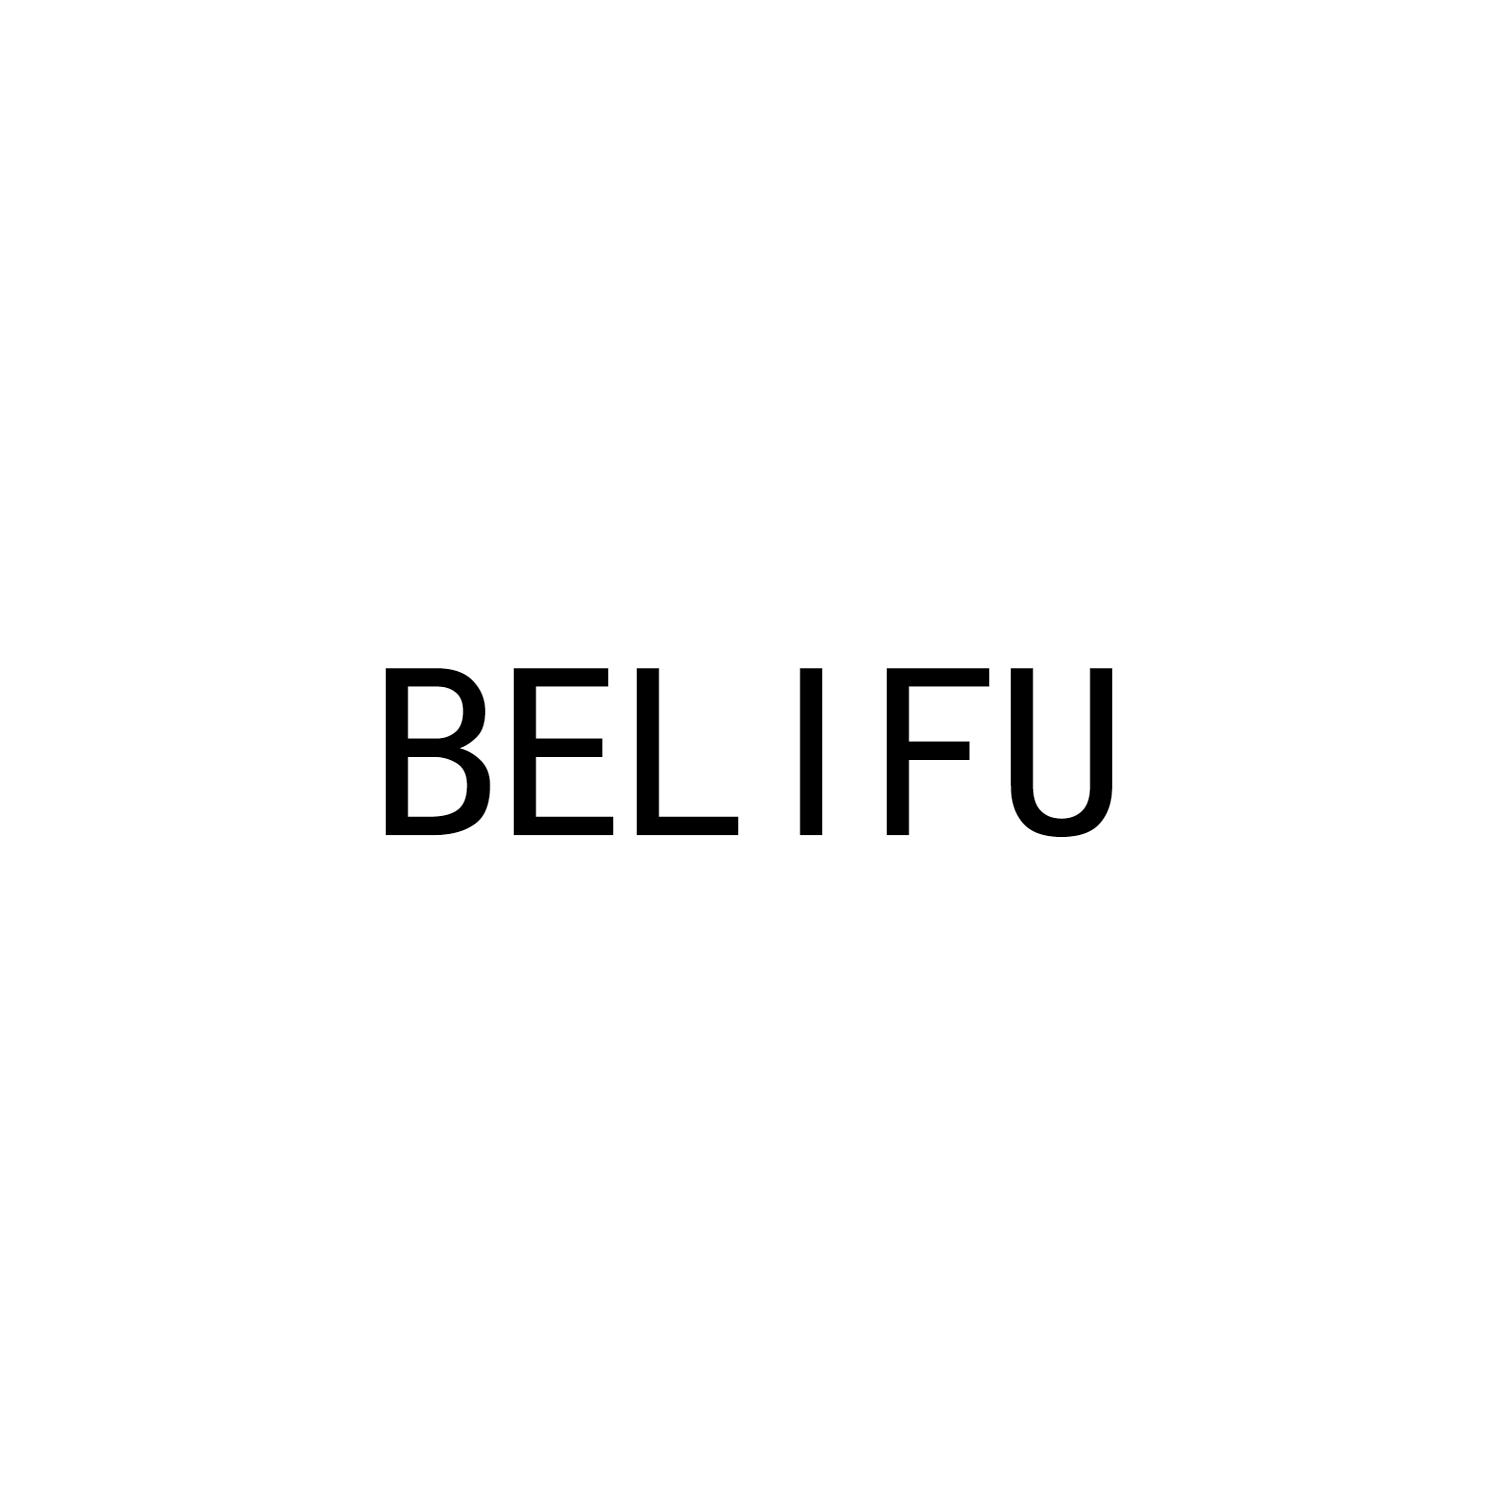 BELIFU